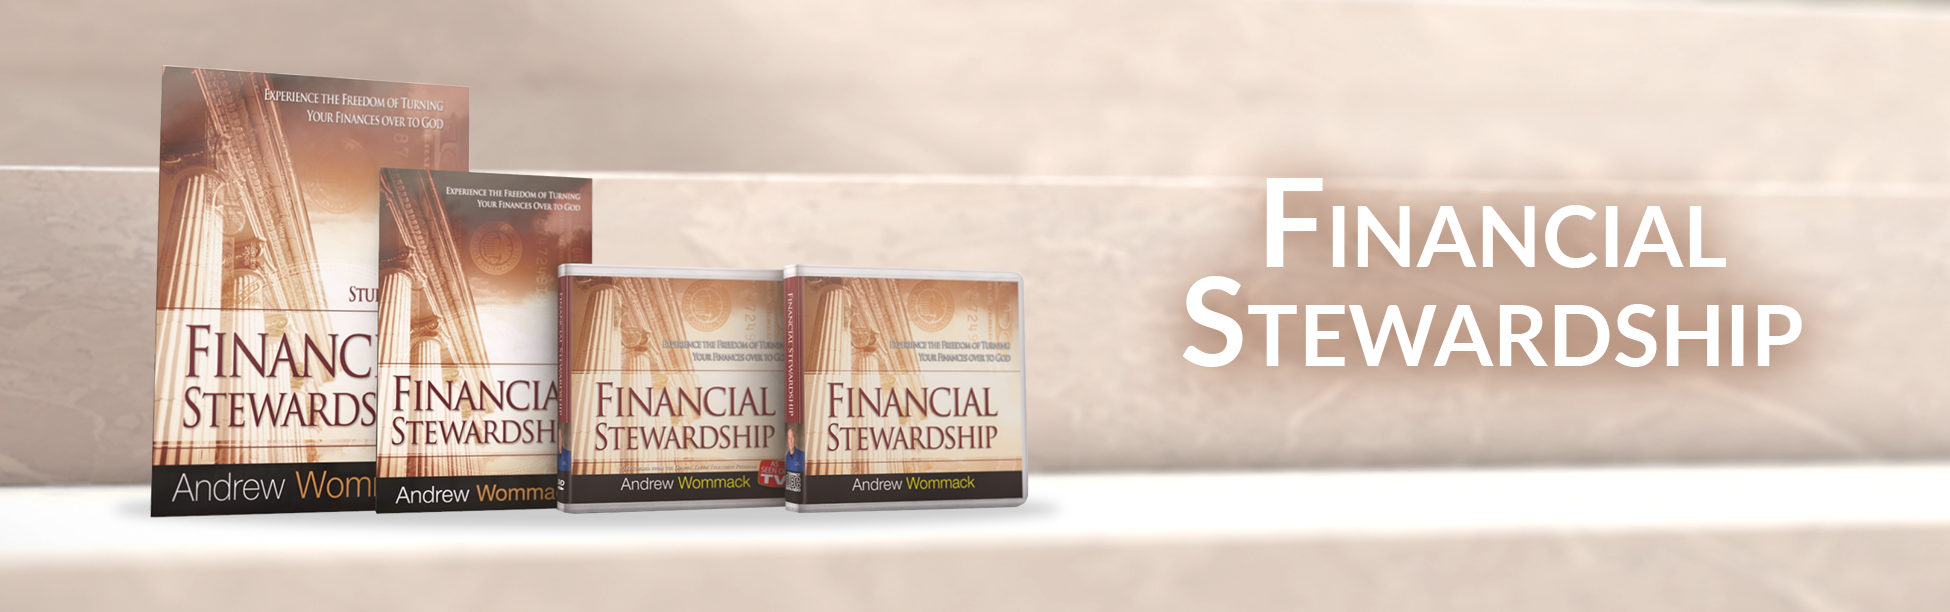 financial-stewardship_top-banner_1950x612